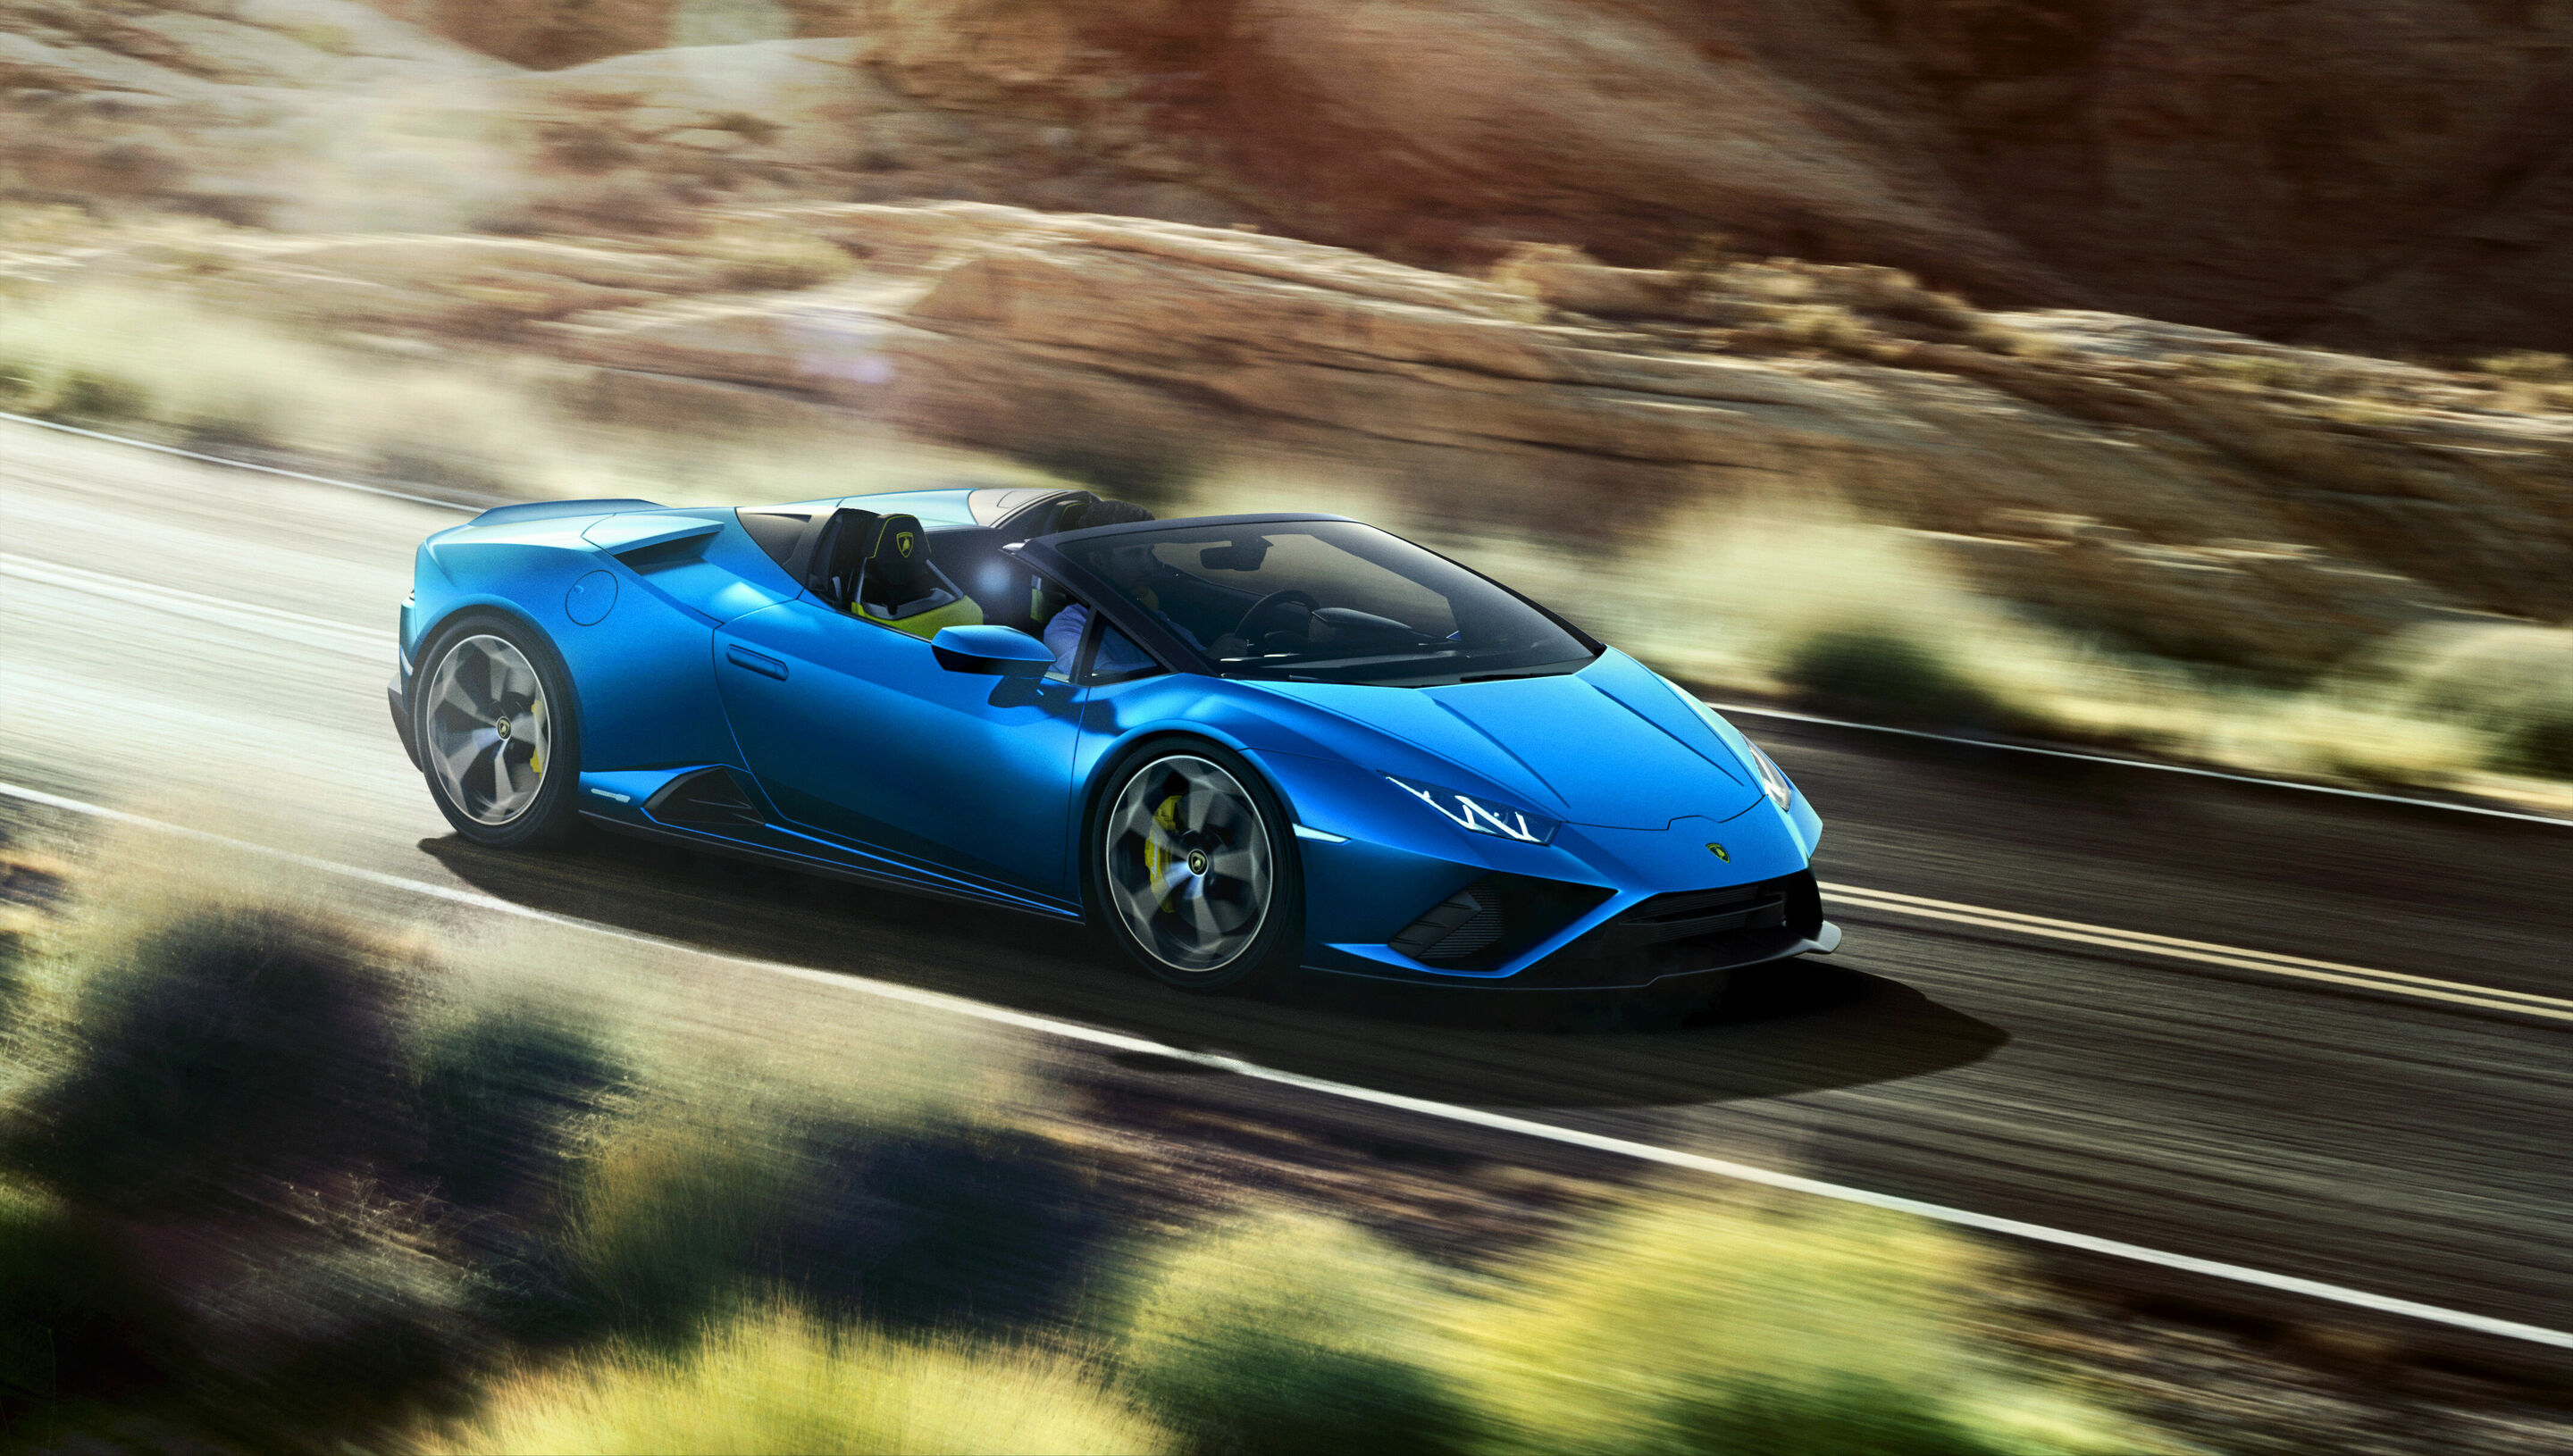 Automobili Lamborghini schließt das Jahr 2020 mit 7.430 ausgelieferten Fahrzeugen und sechs neuen Modellen